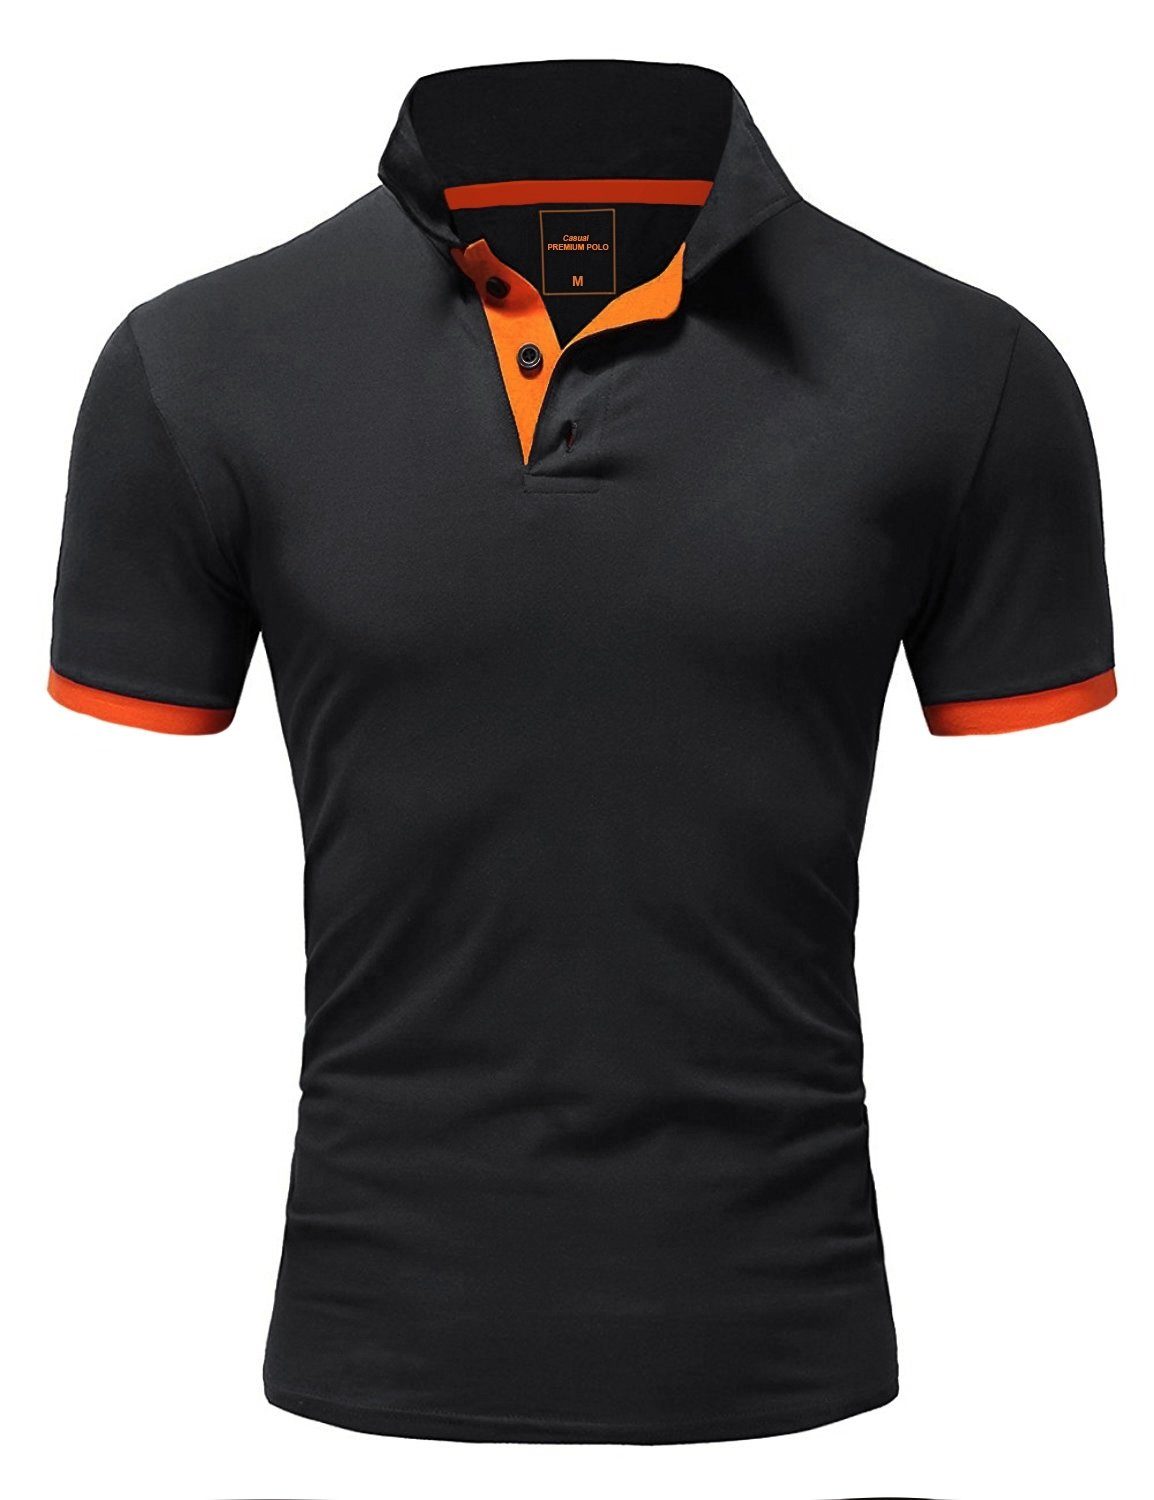 mit schwarz-orange ADRIEL behype Poloshirt tollen Farbakzenten